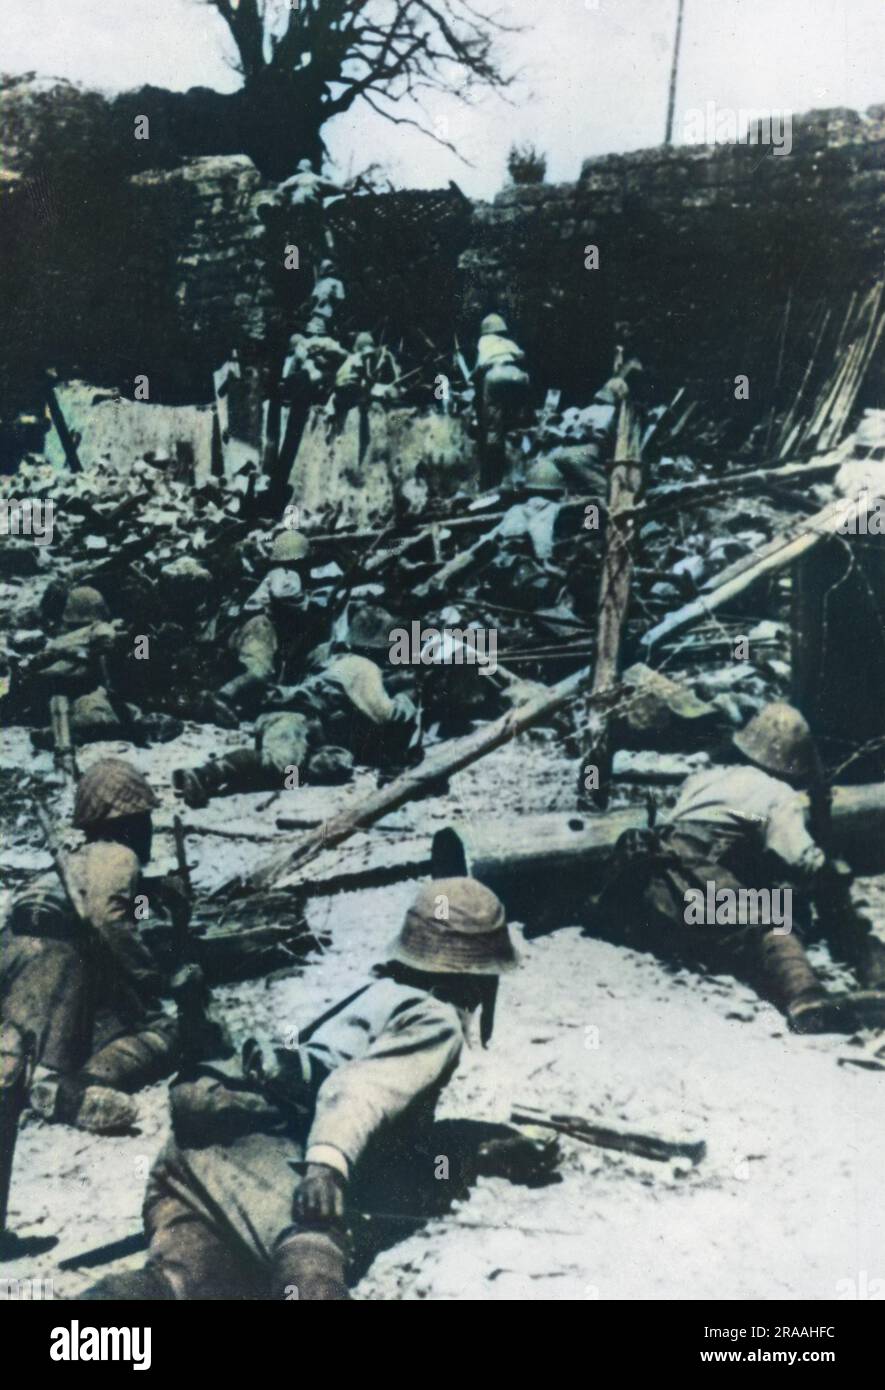 Les troupes japonaises lancent une attaque sur Chungking (Chongqing) pendant la seconde guerre sino-japonaise. À partir de la fin de 1938, Chungking devint la base et la capitale provisoire du KMT de Chiang Kai-Shek. Malgré de nombreux bombardements aériens et des tentatives de prendre la ville, elle a été ferme jusqu'à la fin de la guerre. Date: 1937-1945 Banque D'Images